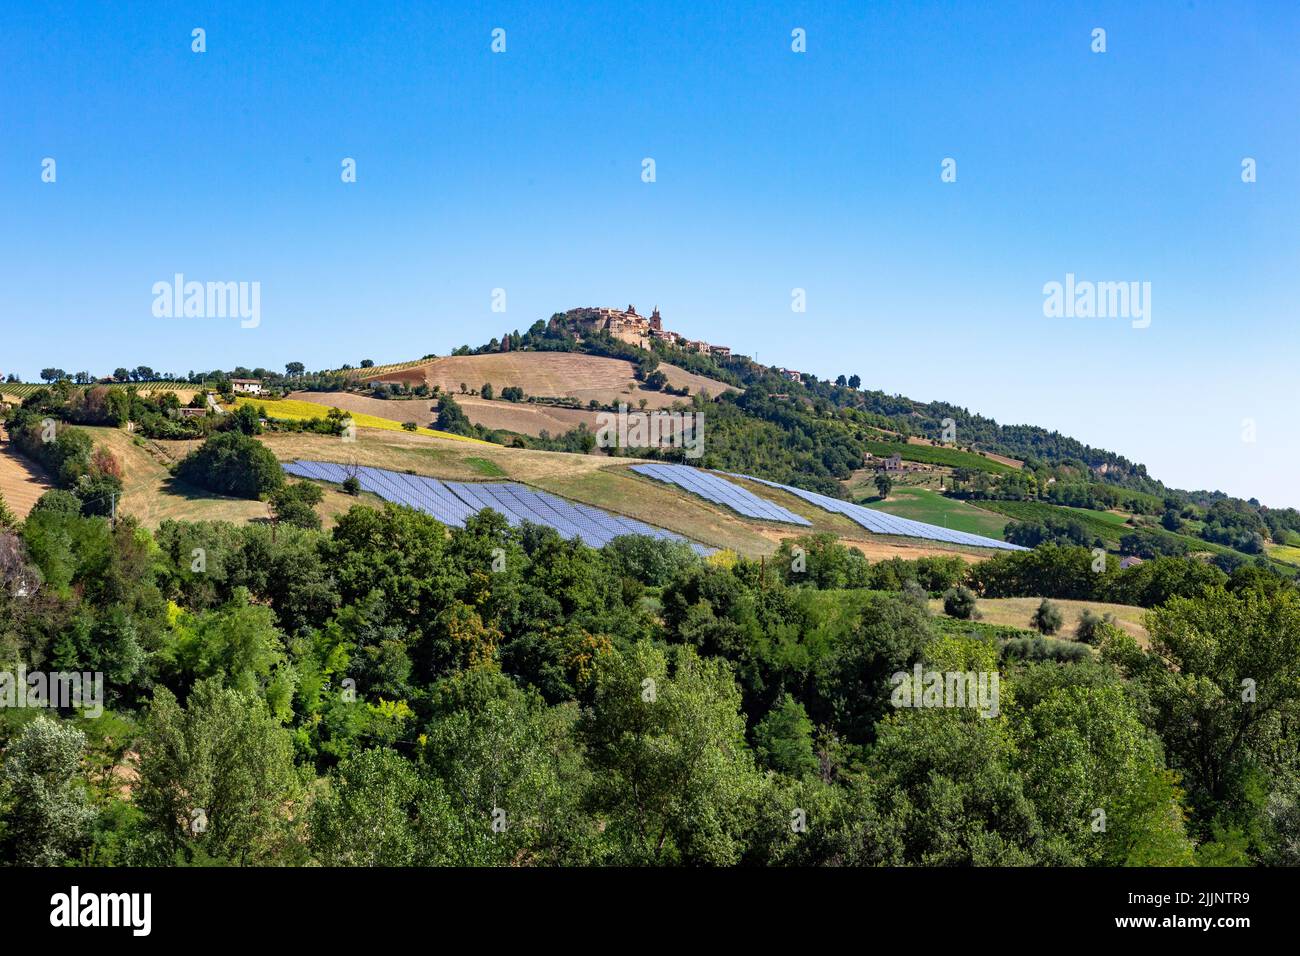 Solarzellen auf den grünen Hügeln des Dorfes Montedinove auf einer Höhe von 561 m in der italienischen Region Marken. Stockfoto